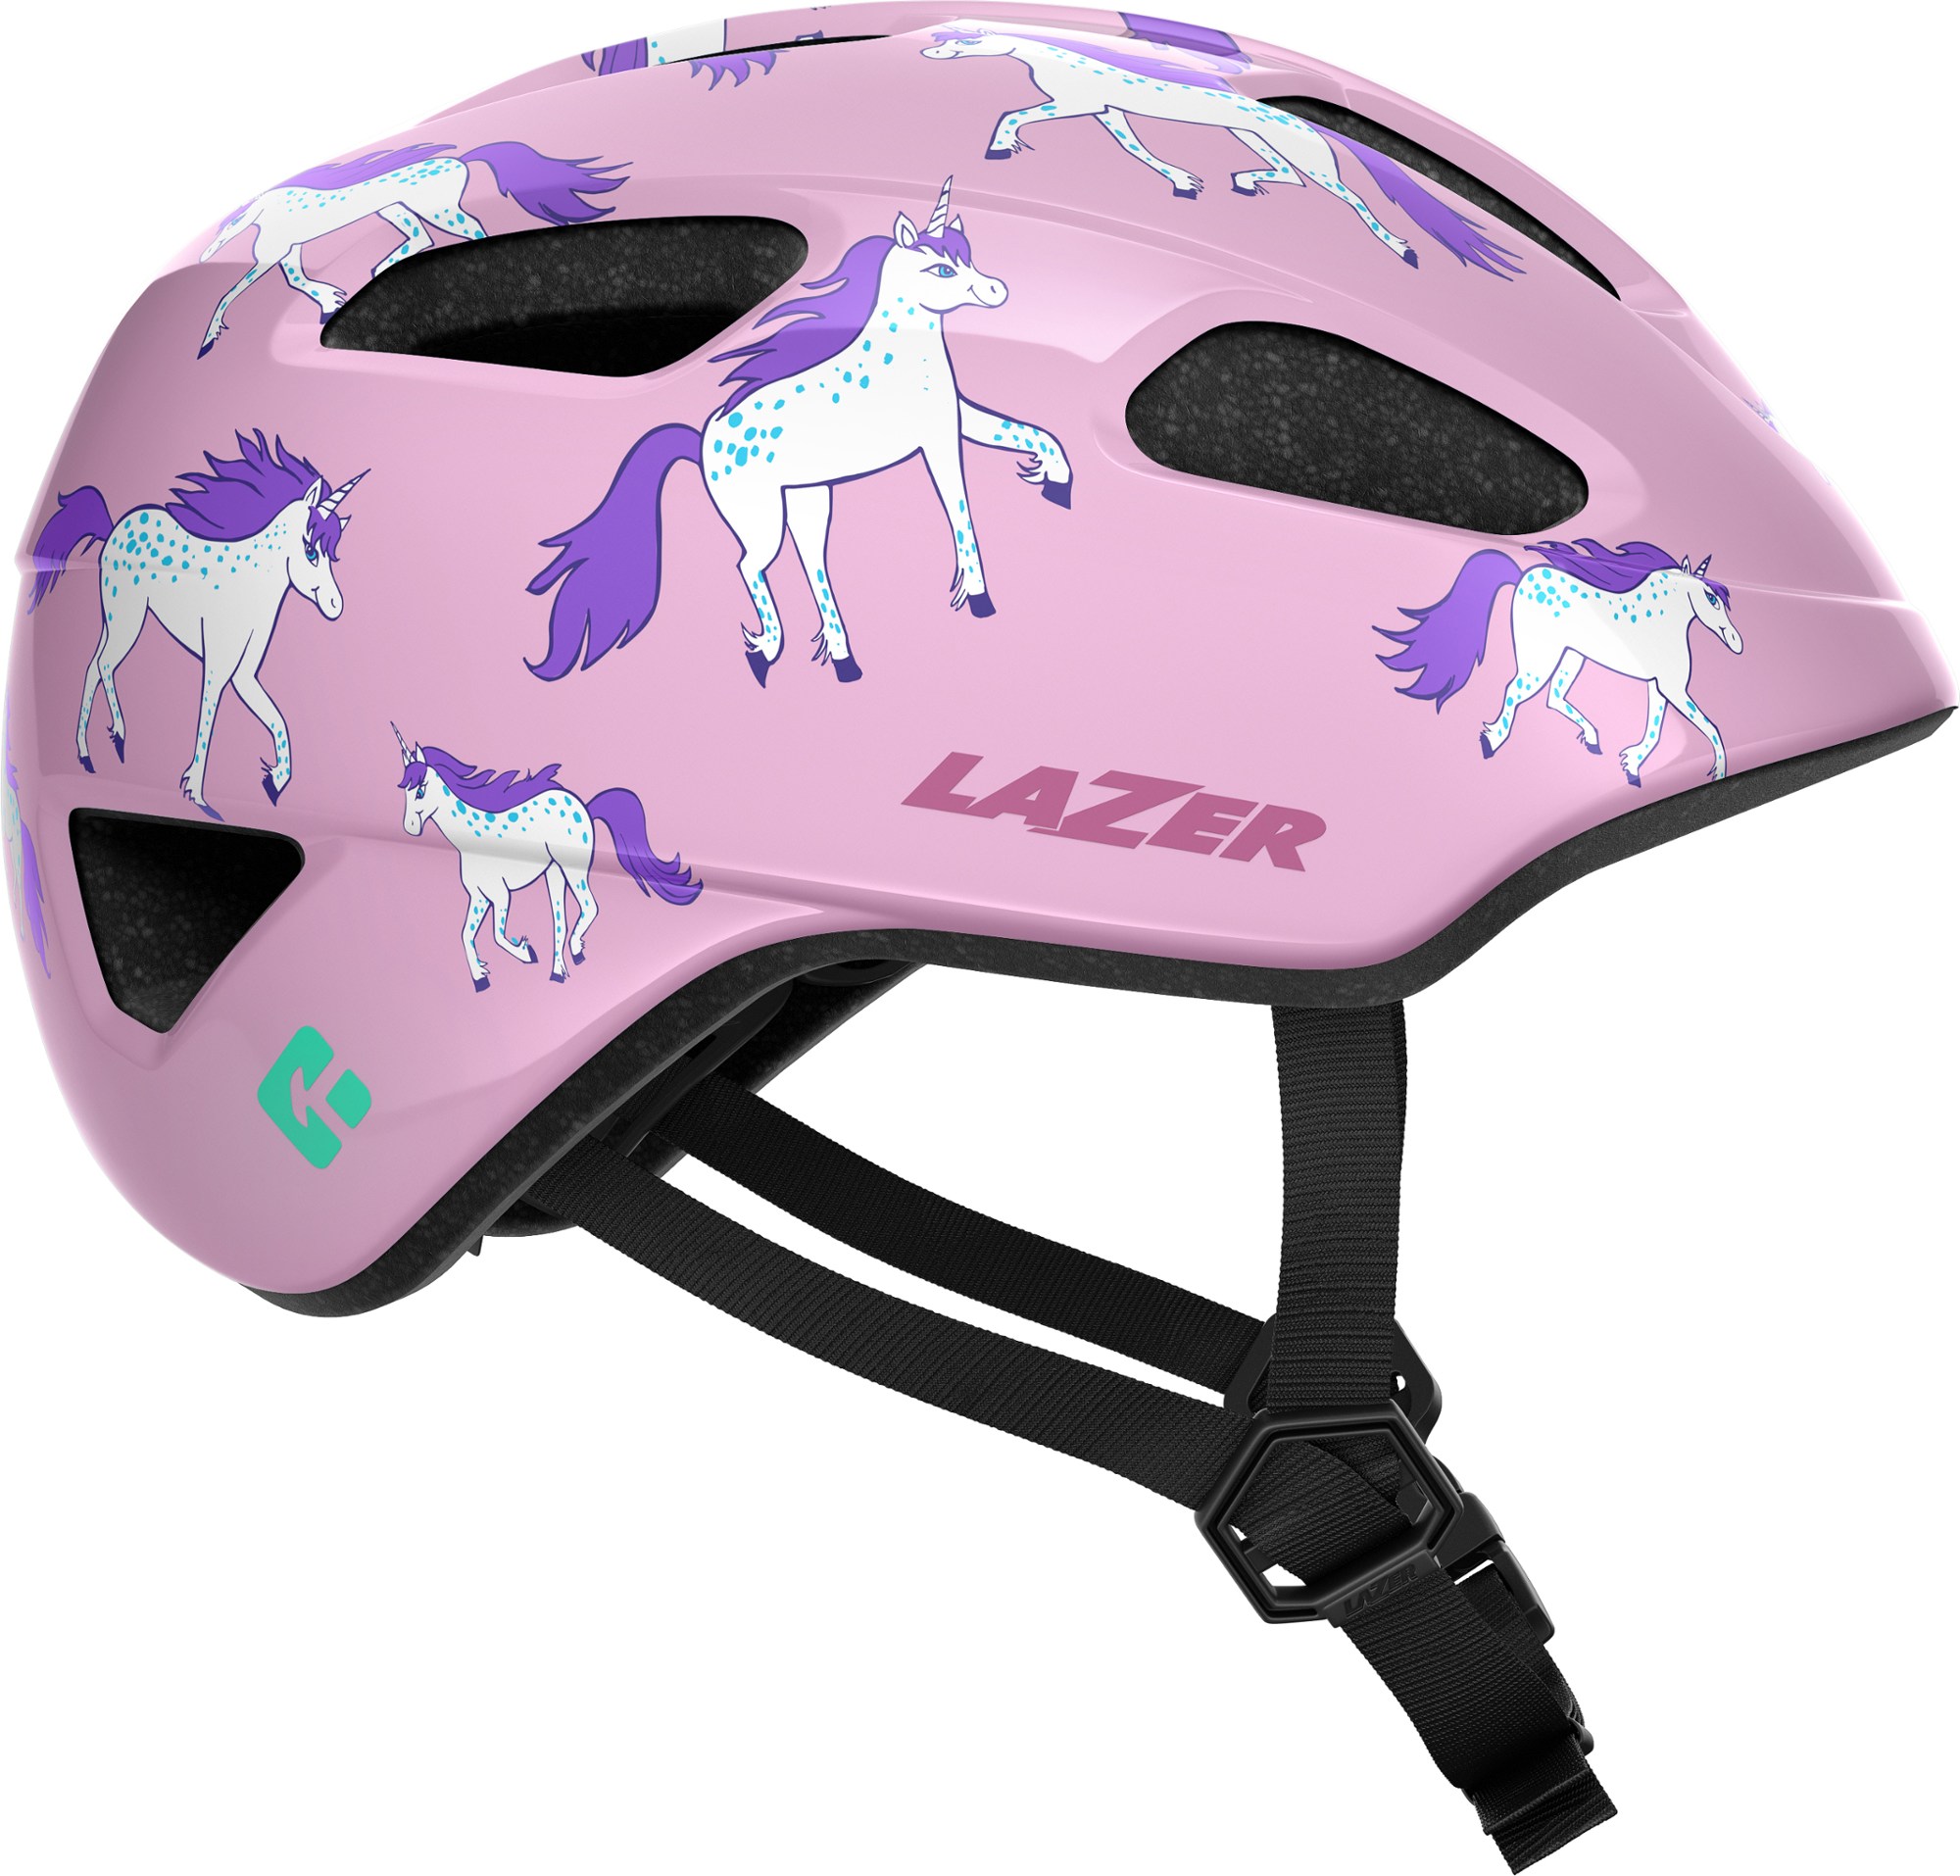 велосипедный шлем jackal kineticore lazer хаки Велосипедный шлем Nutz KinetiCore — детский Lazer, розовый